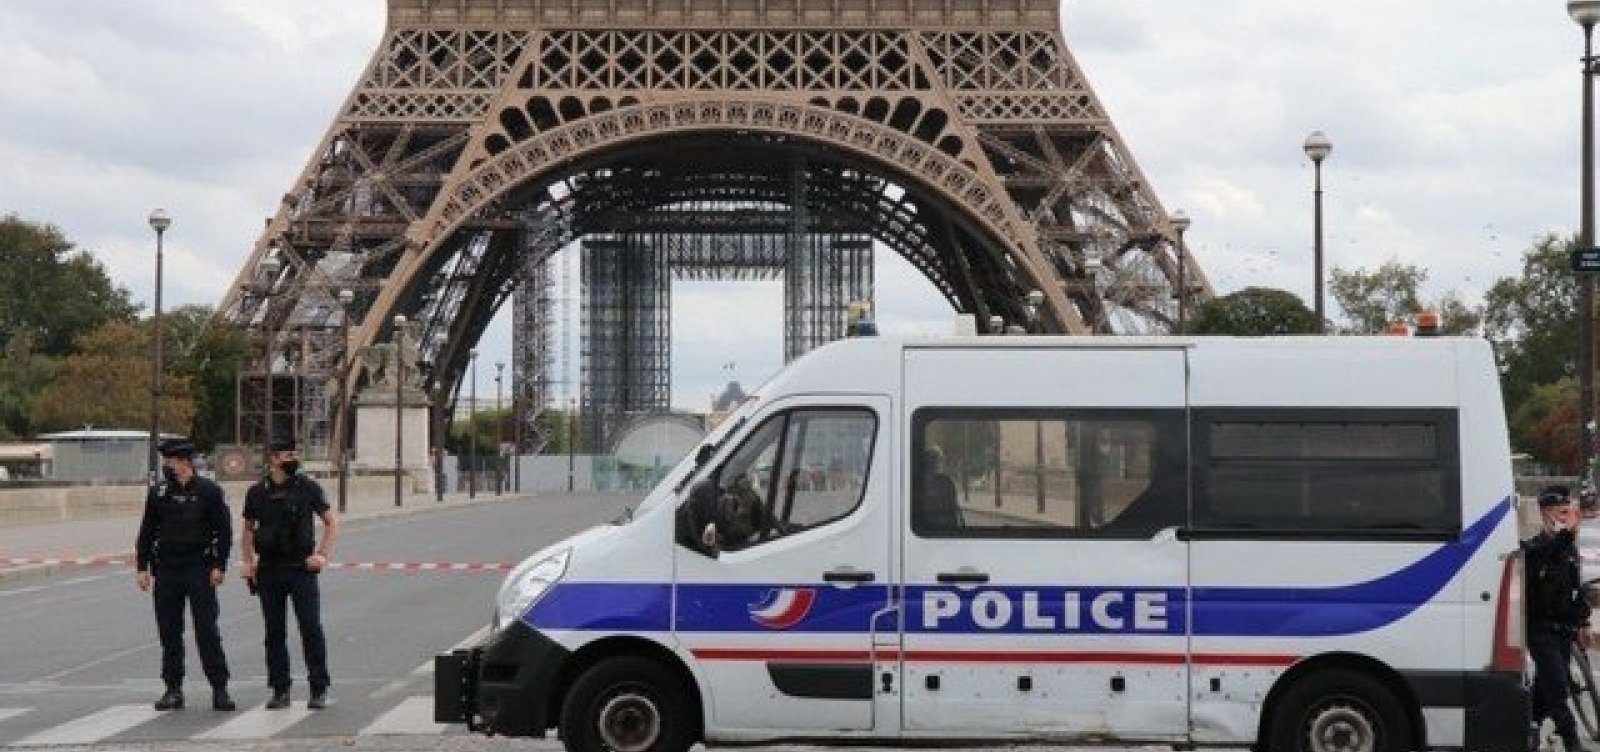 Professor é decapitado em via pública na França e suspeita de terrorismo é investigada